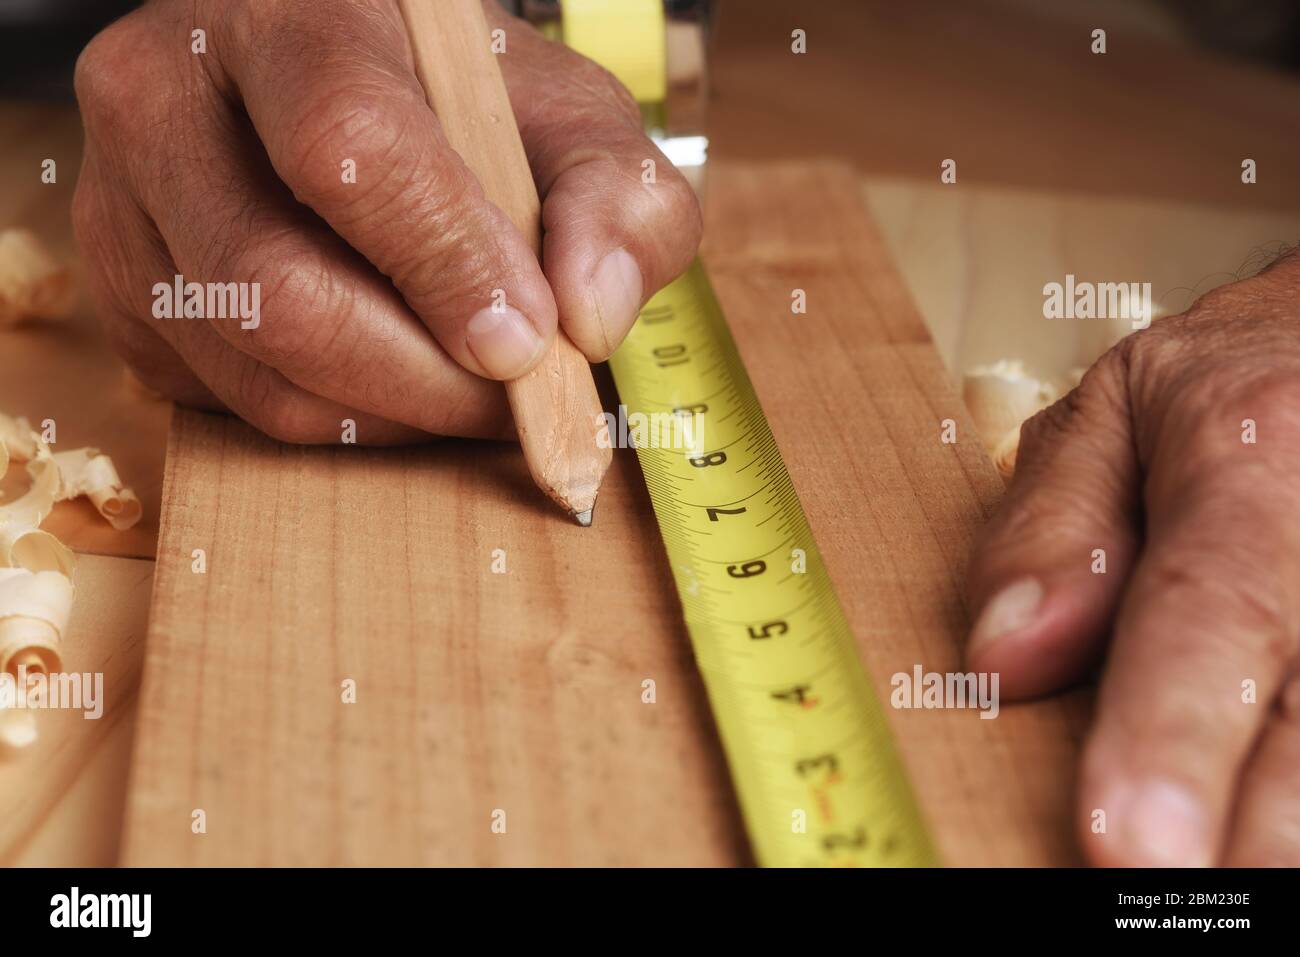 Die Nahaufnahme des Zimmermanns, der die Markierung des Brettes für das Schneiden misst. Der Mensch ist nicht erkennbar, nur Hände. Stockfoto